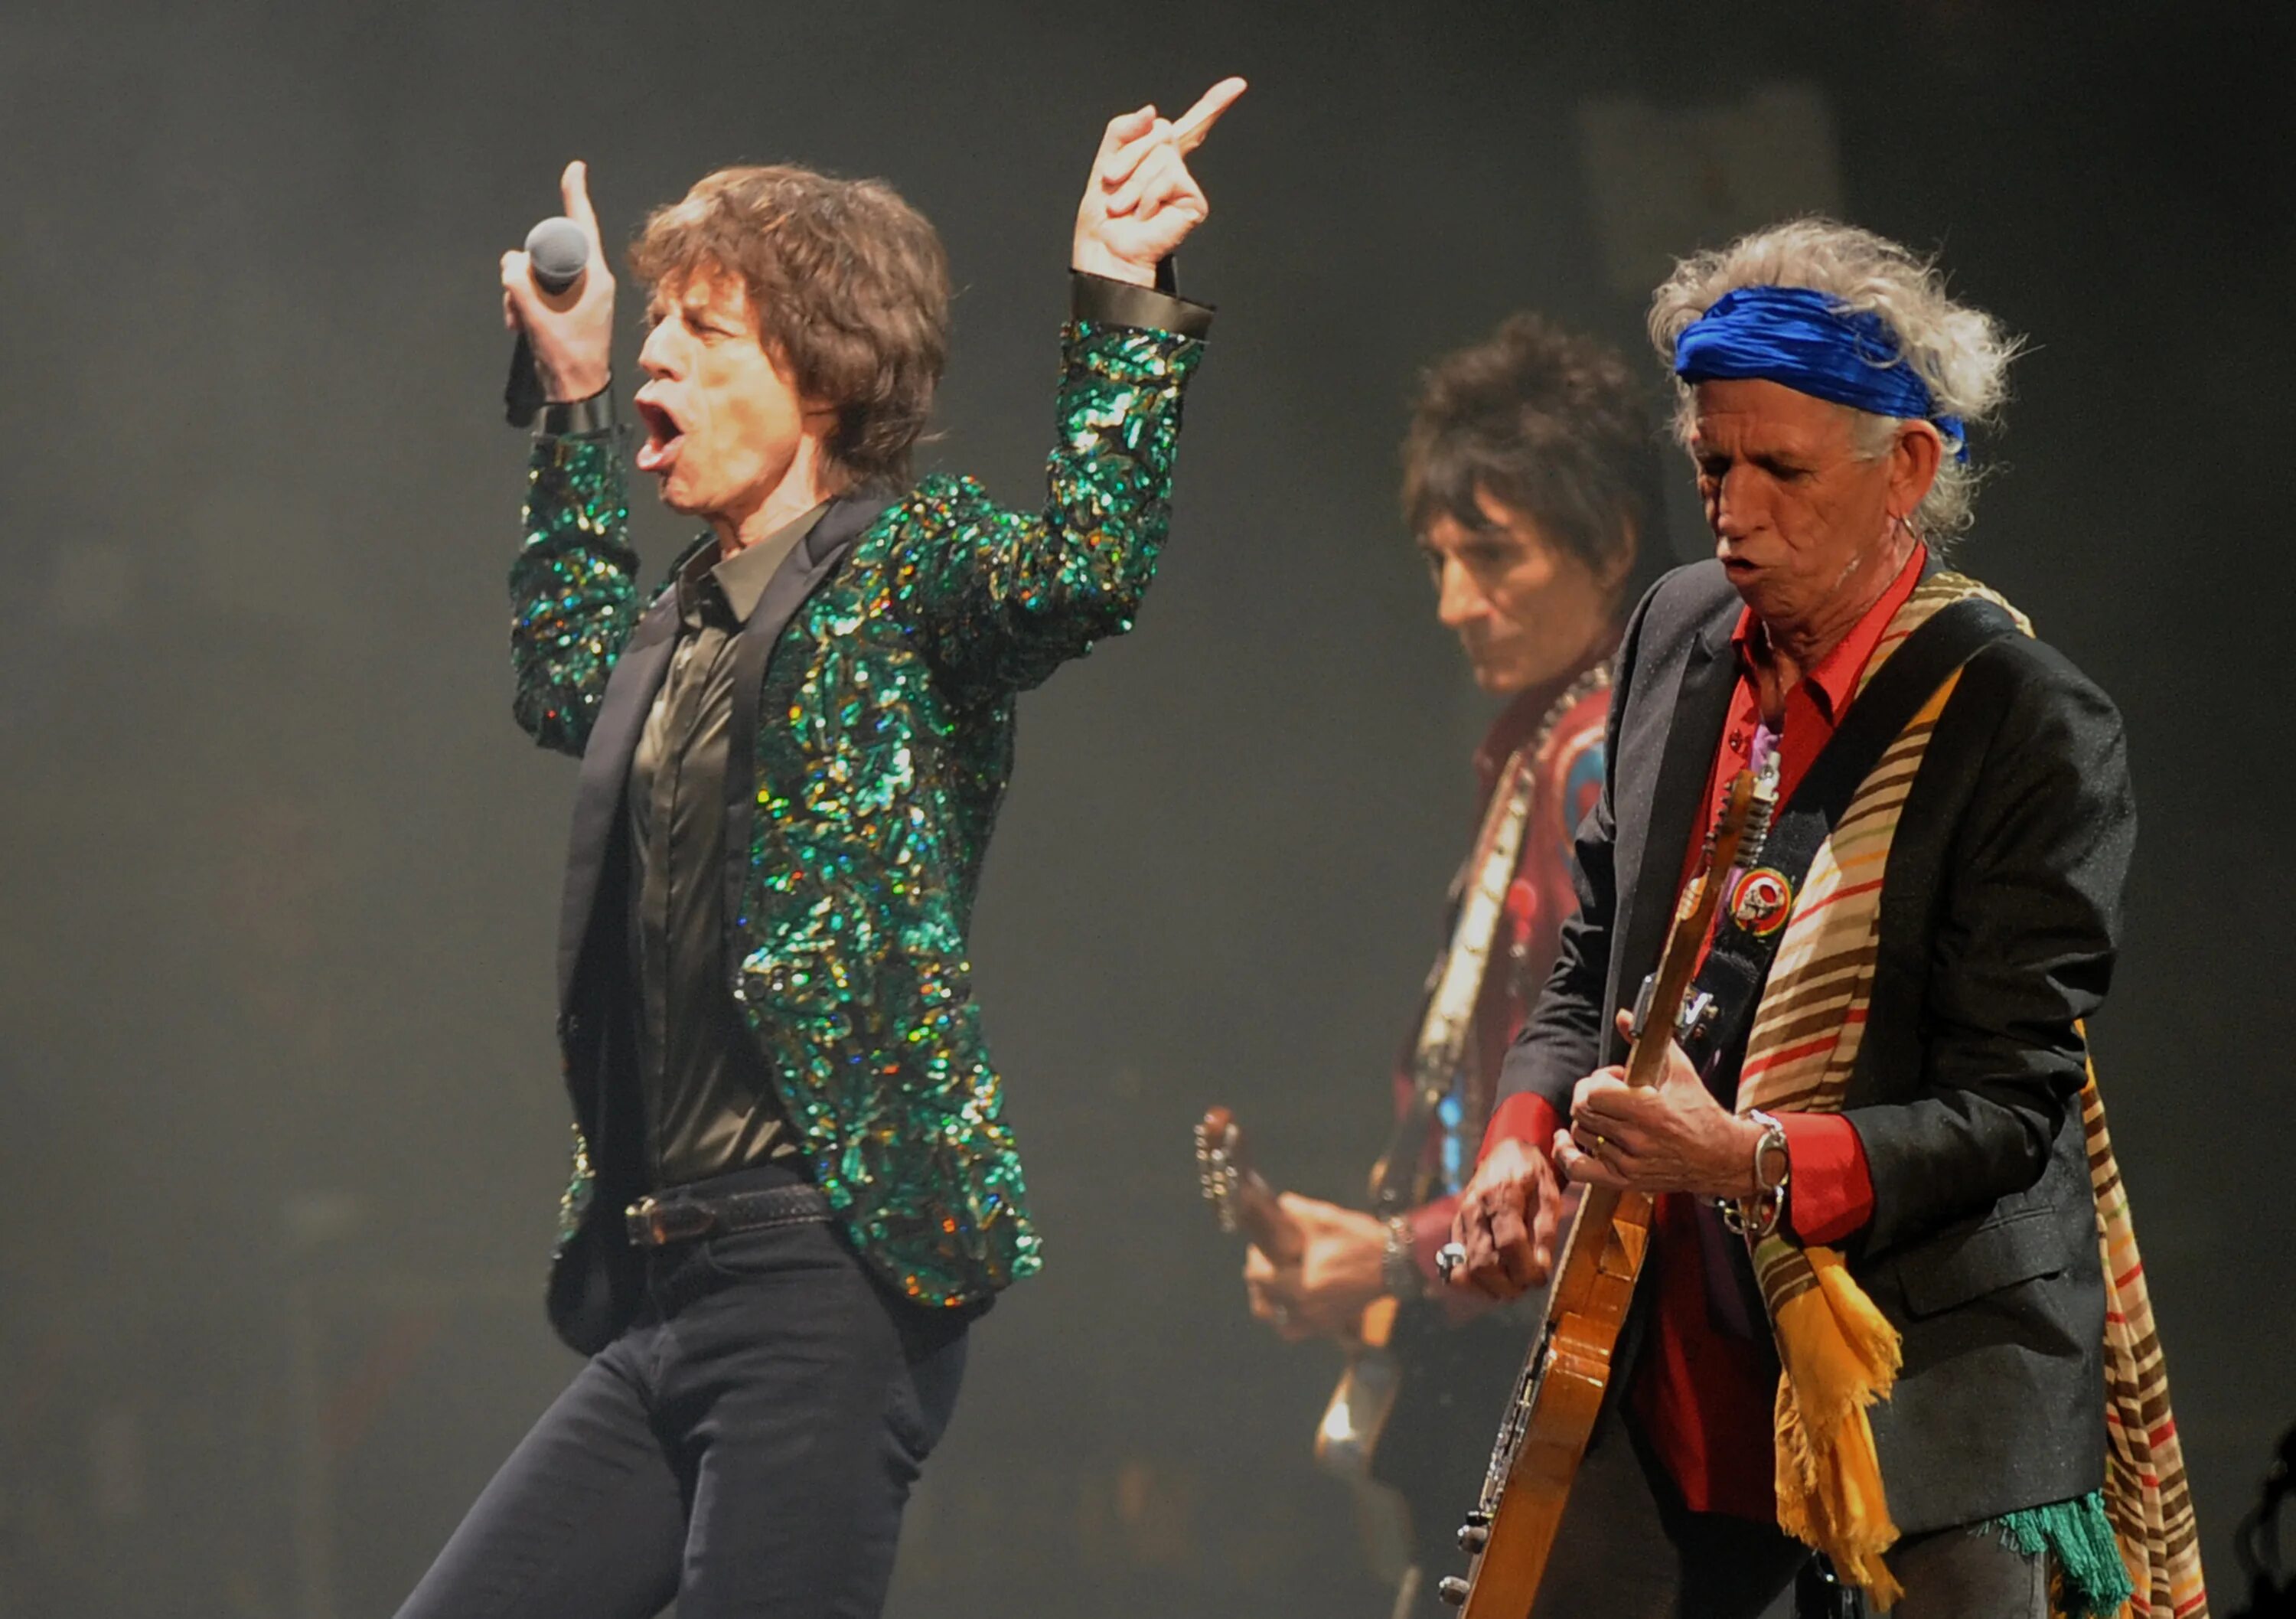 Rolling stones songs. Роллинг стоунз сейчас. Фото Роллинг стоунз в высоком качестве. Гайд парк рок группа Rolling Stones. Роллинг стоунз игра с огнем.